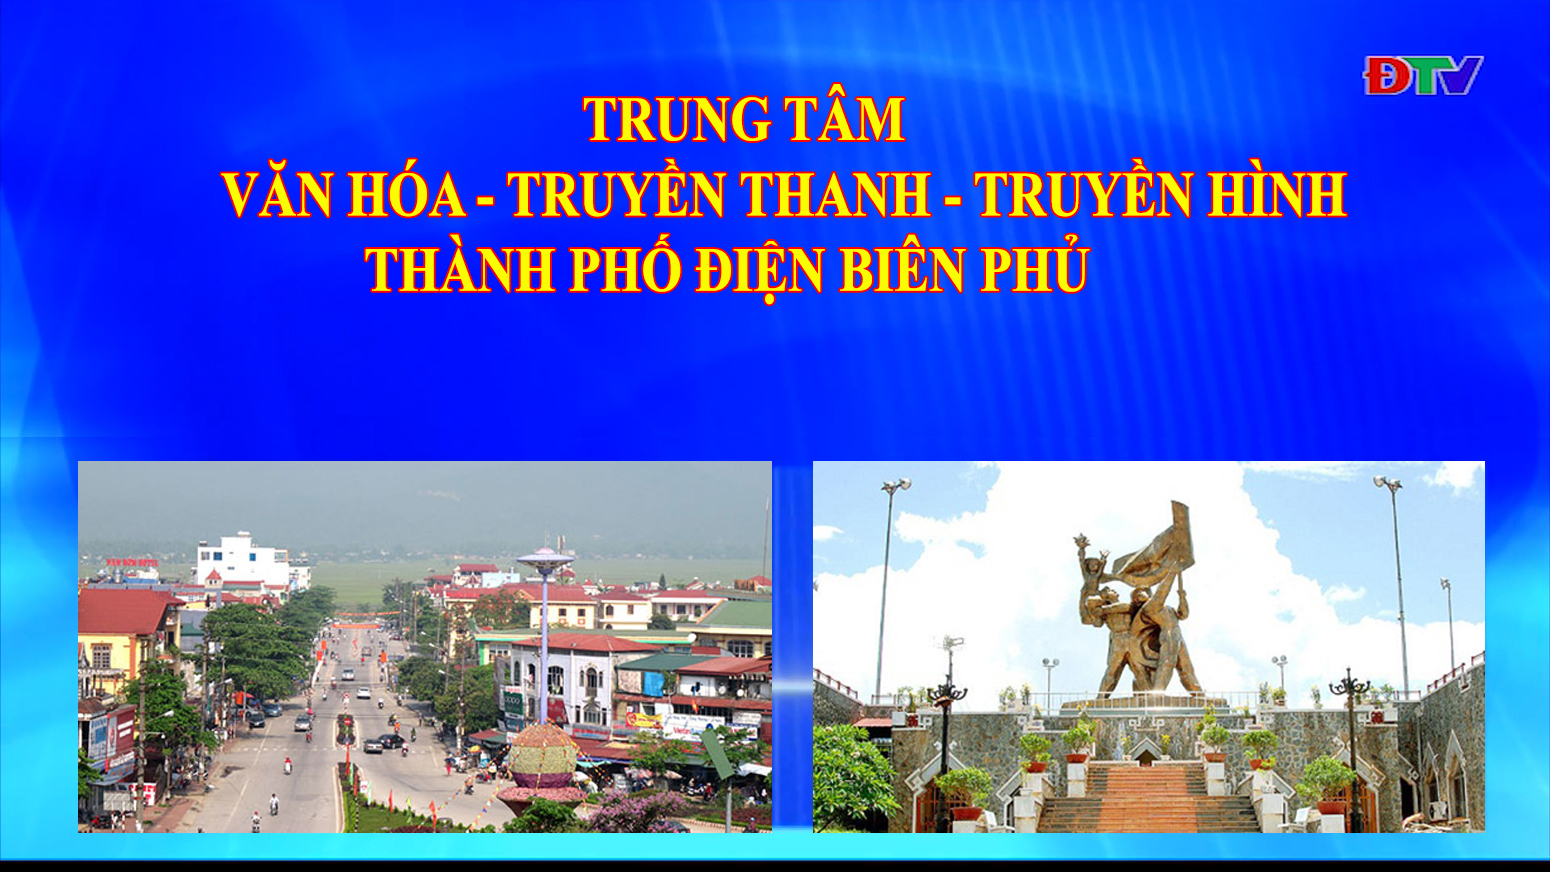 Trung tâm VH-TTTH thành phố Điện Biên Phủ (Ngày 12-7-2022)